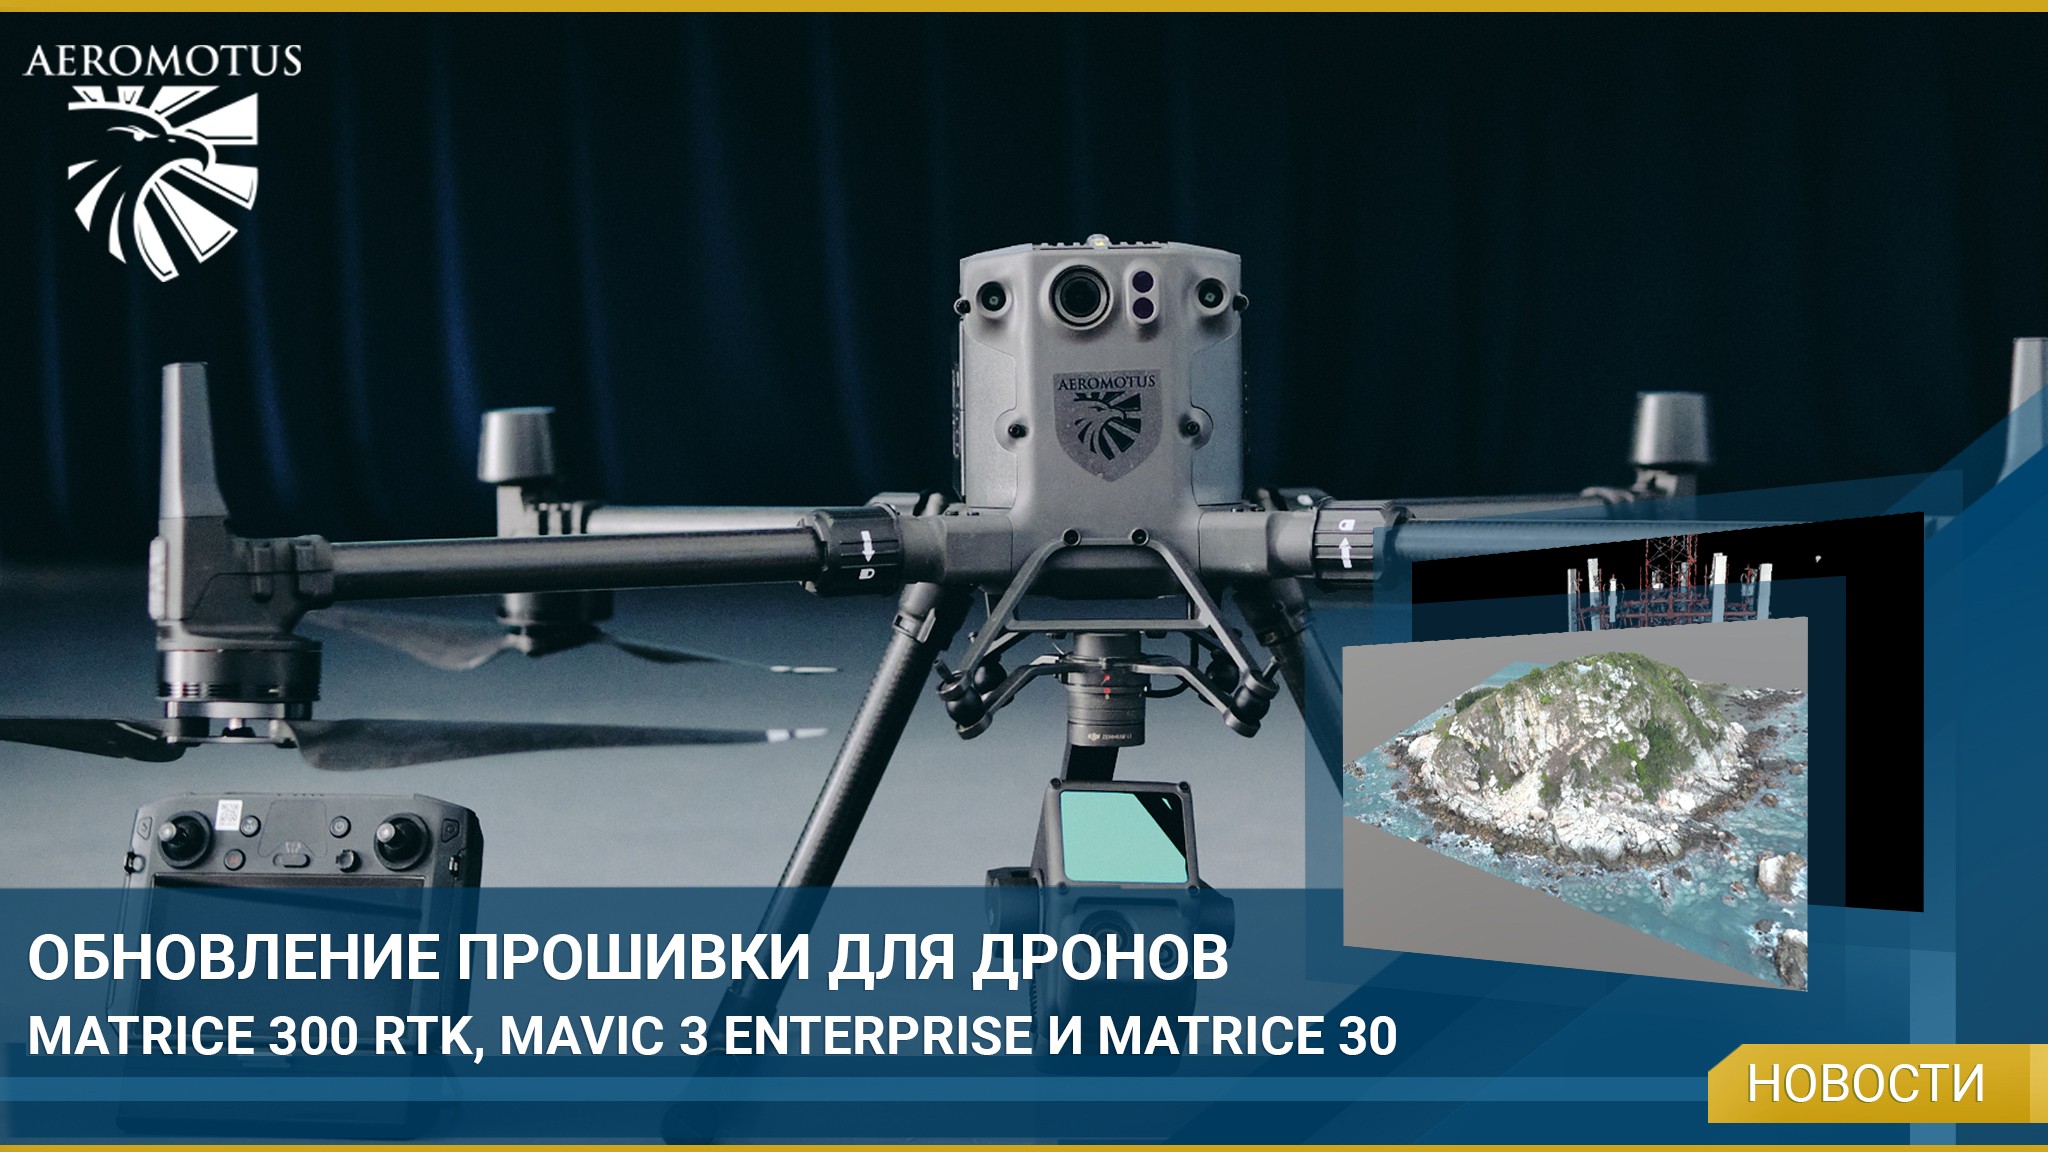 Вышло обновление прошивки для дронов Matrice 300 RTK, Mavic 3E и Matrice 30 - Новости